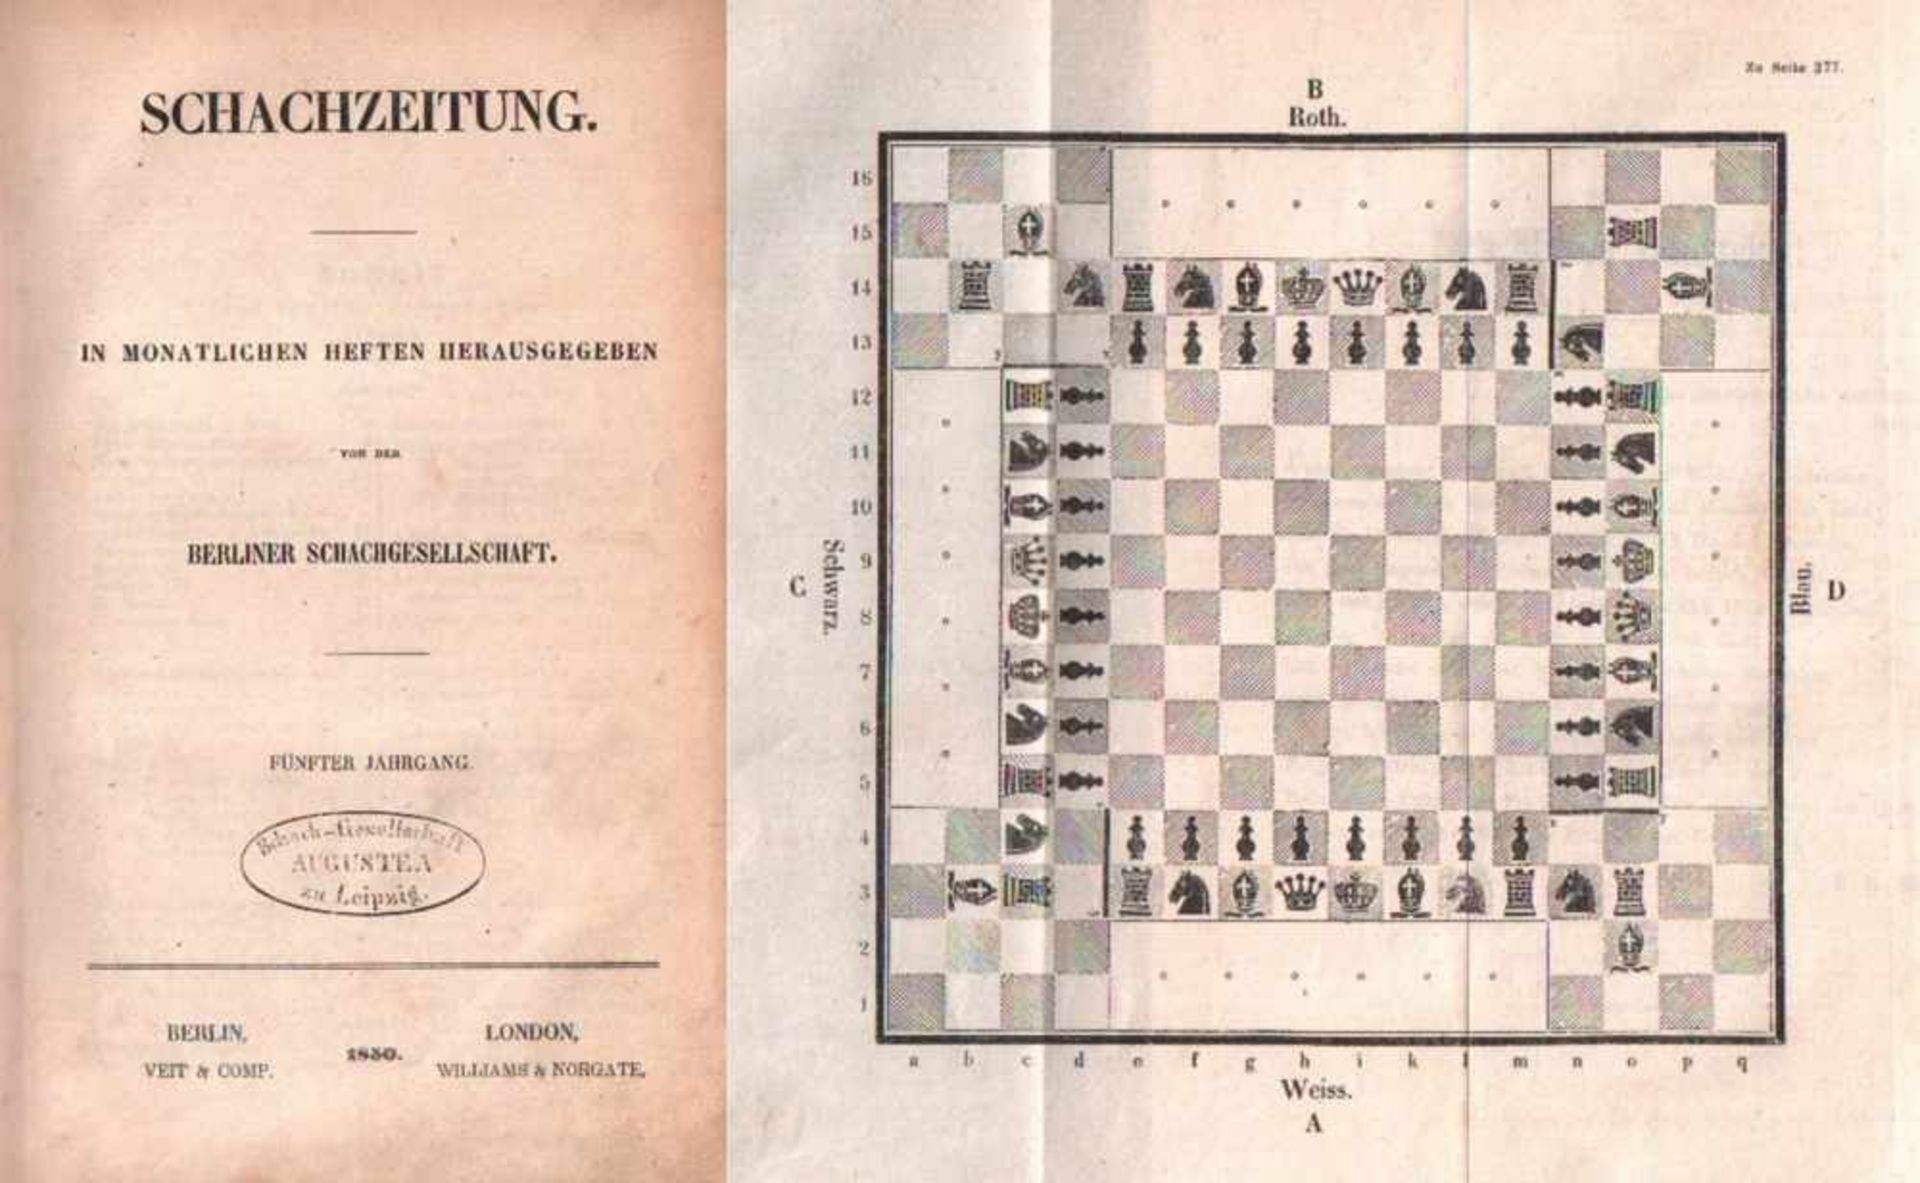 (Deutsche) Schachzeitung.Hrsg. von der Berliner Schachgesellschaft. 5. Jahrgang 1850. Berlin, Veit